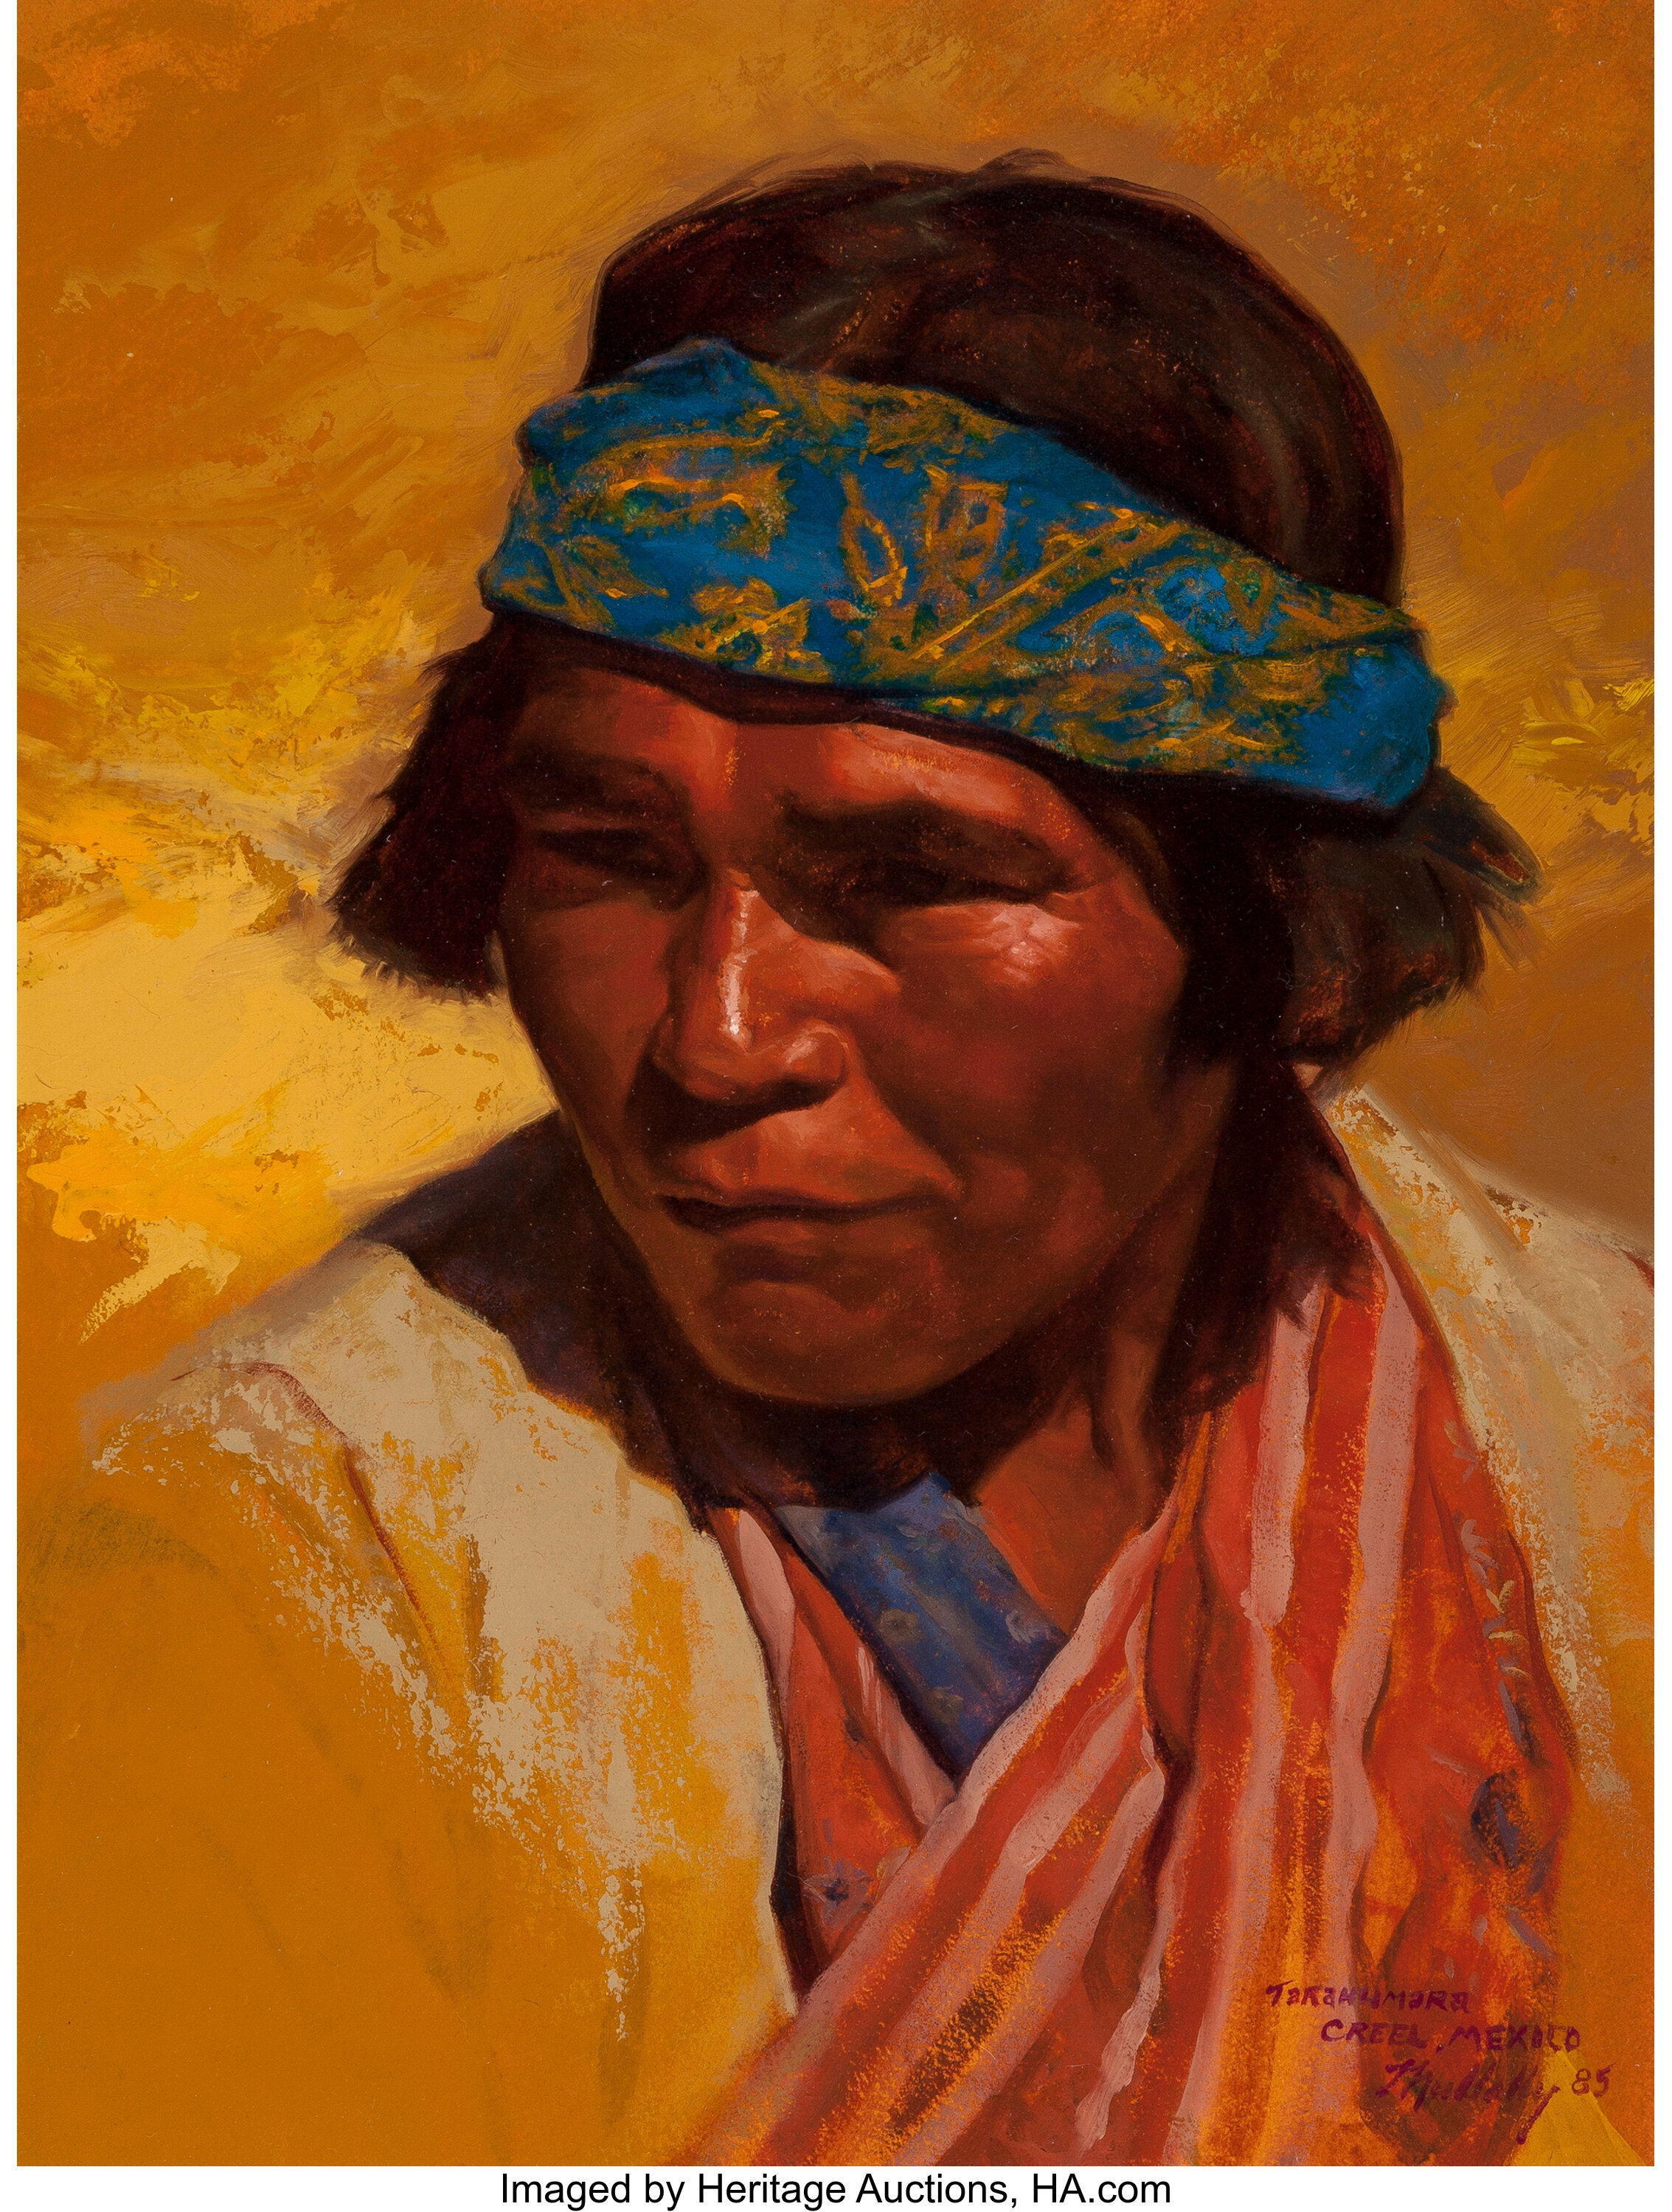 Paul Mullally American B 1947 Tarahumara Creel Mexico 1985 Lot Heritage Auctions